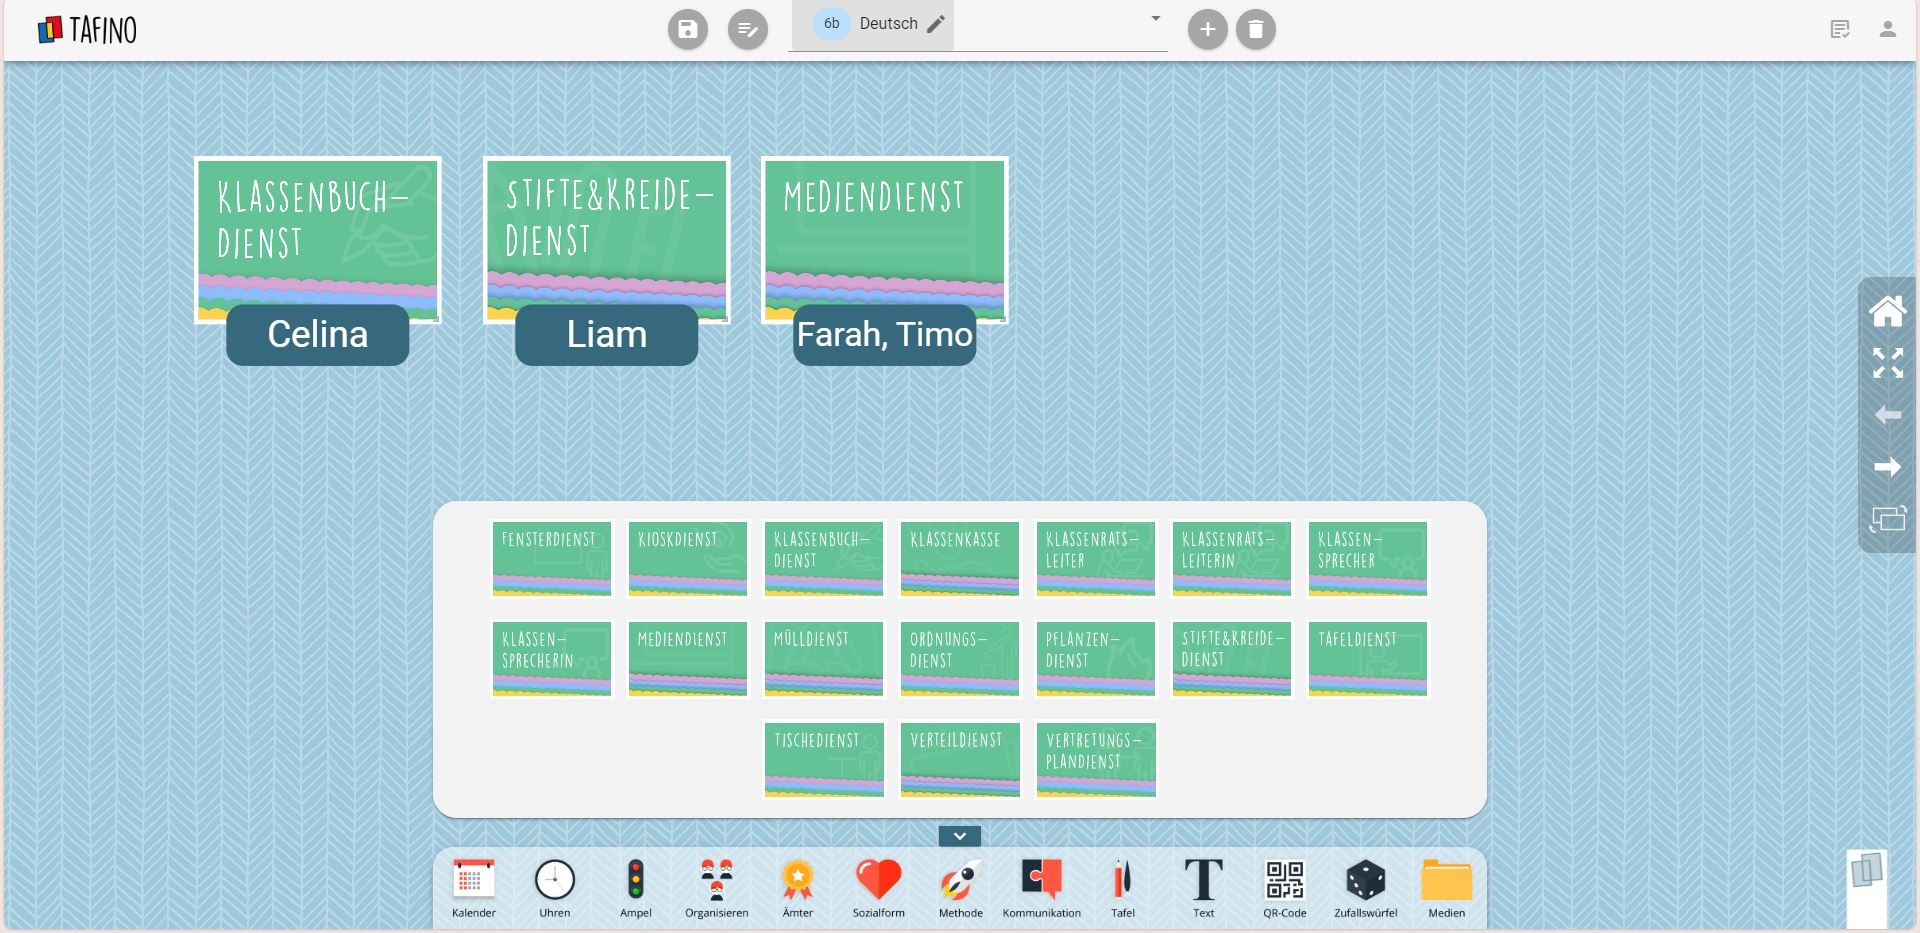 TAFINO - Digitale Tafel interaktiv organisiert - Sekundarstufe - Online-Version